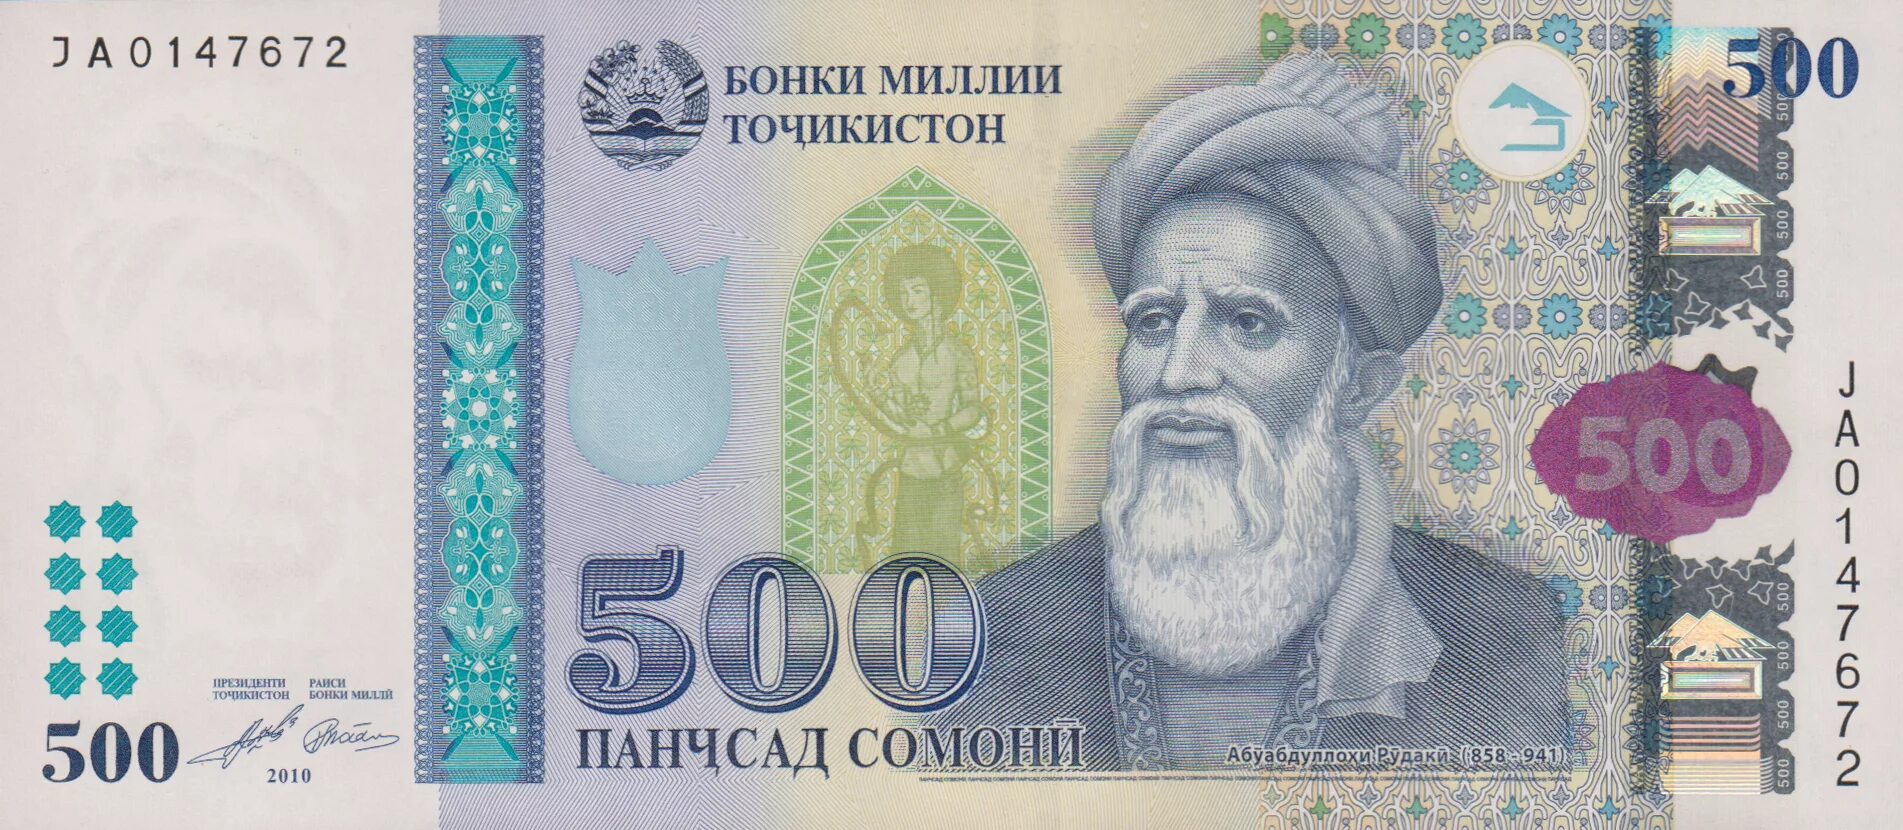 Купюра Таджикистана 500 Сомони. Деньги Таджикистана 500 Сомони. Купюры Сомони 500 Сомони. Пули точики 500 сомона.